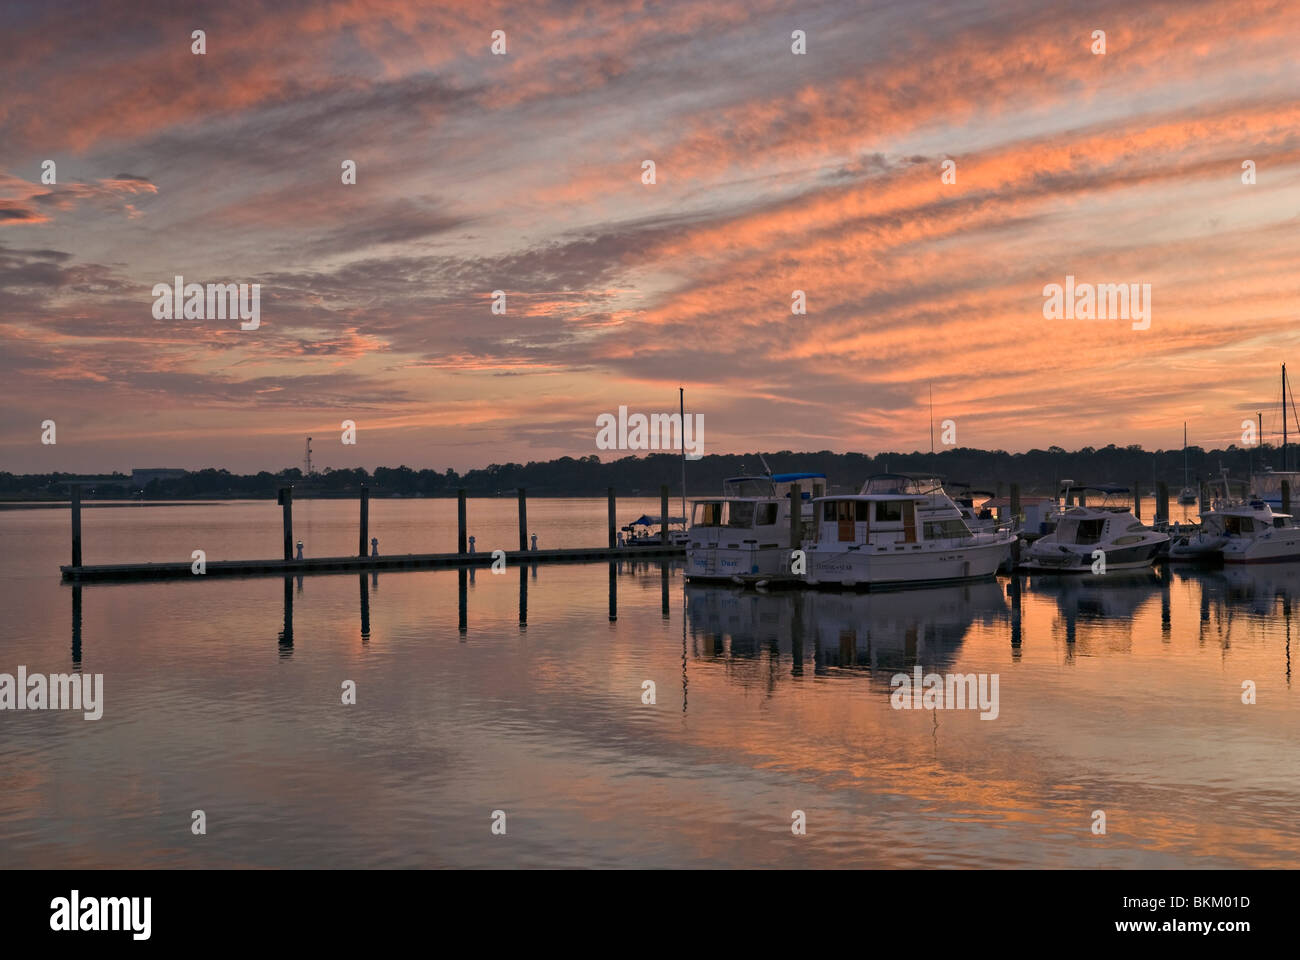 Marina in Beaufort, South Carolina, USA Stock Photo